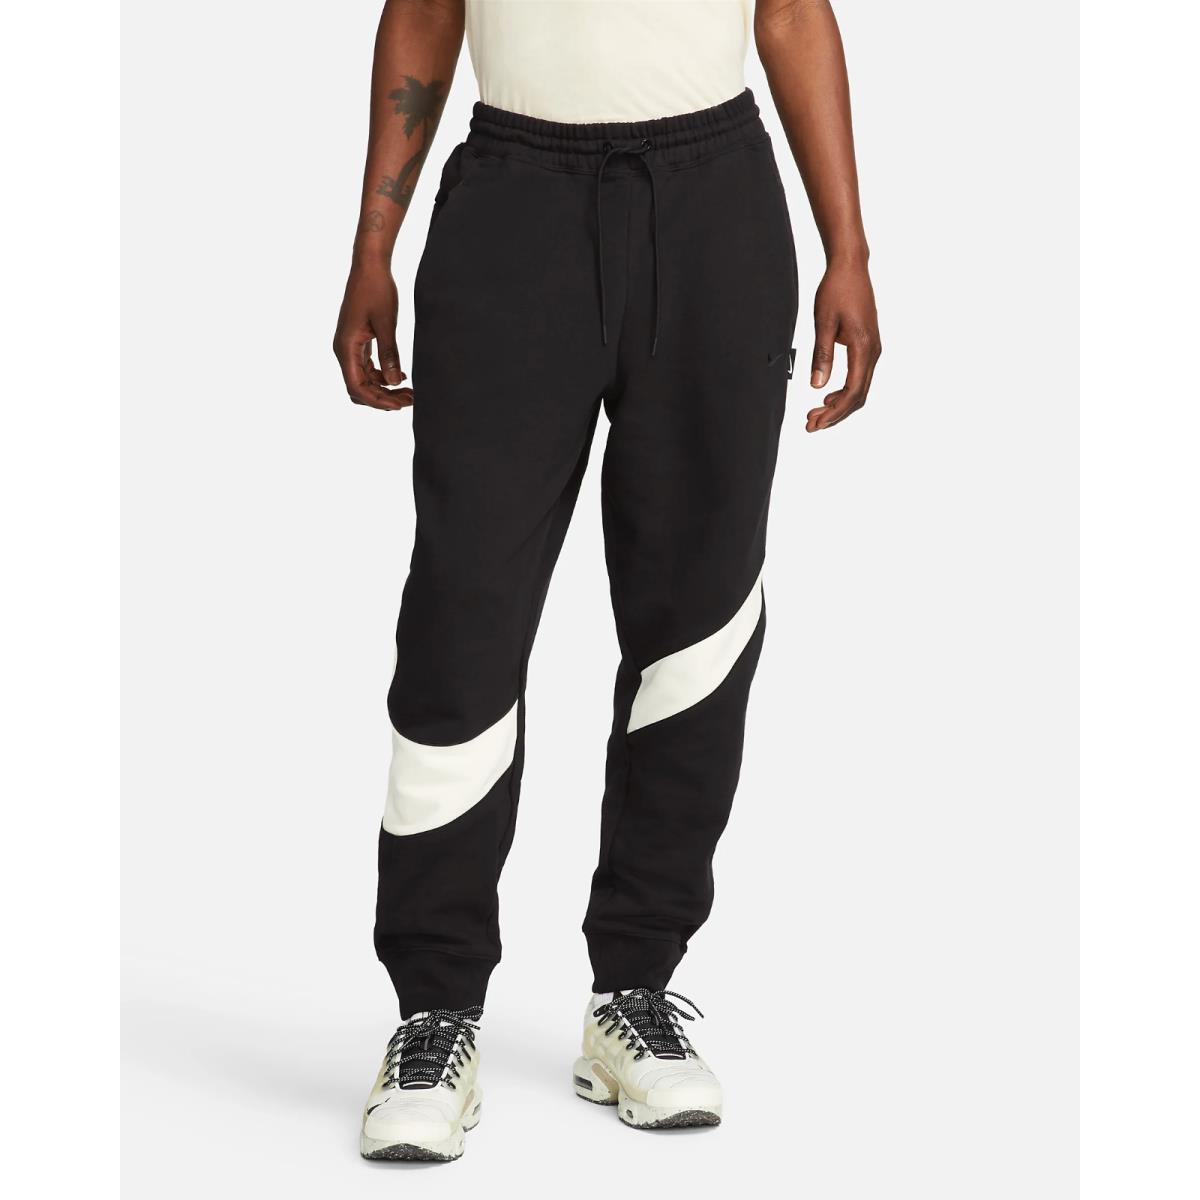 Nike Sportswear Swoosh Fleece Pants Men s SZ Small Black DX0564-013